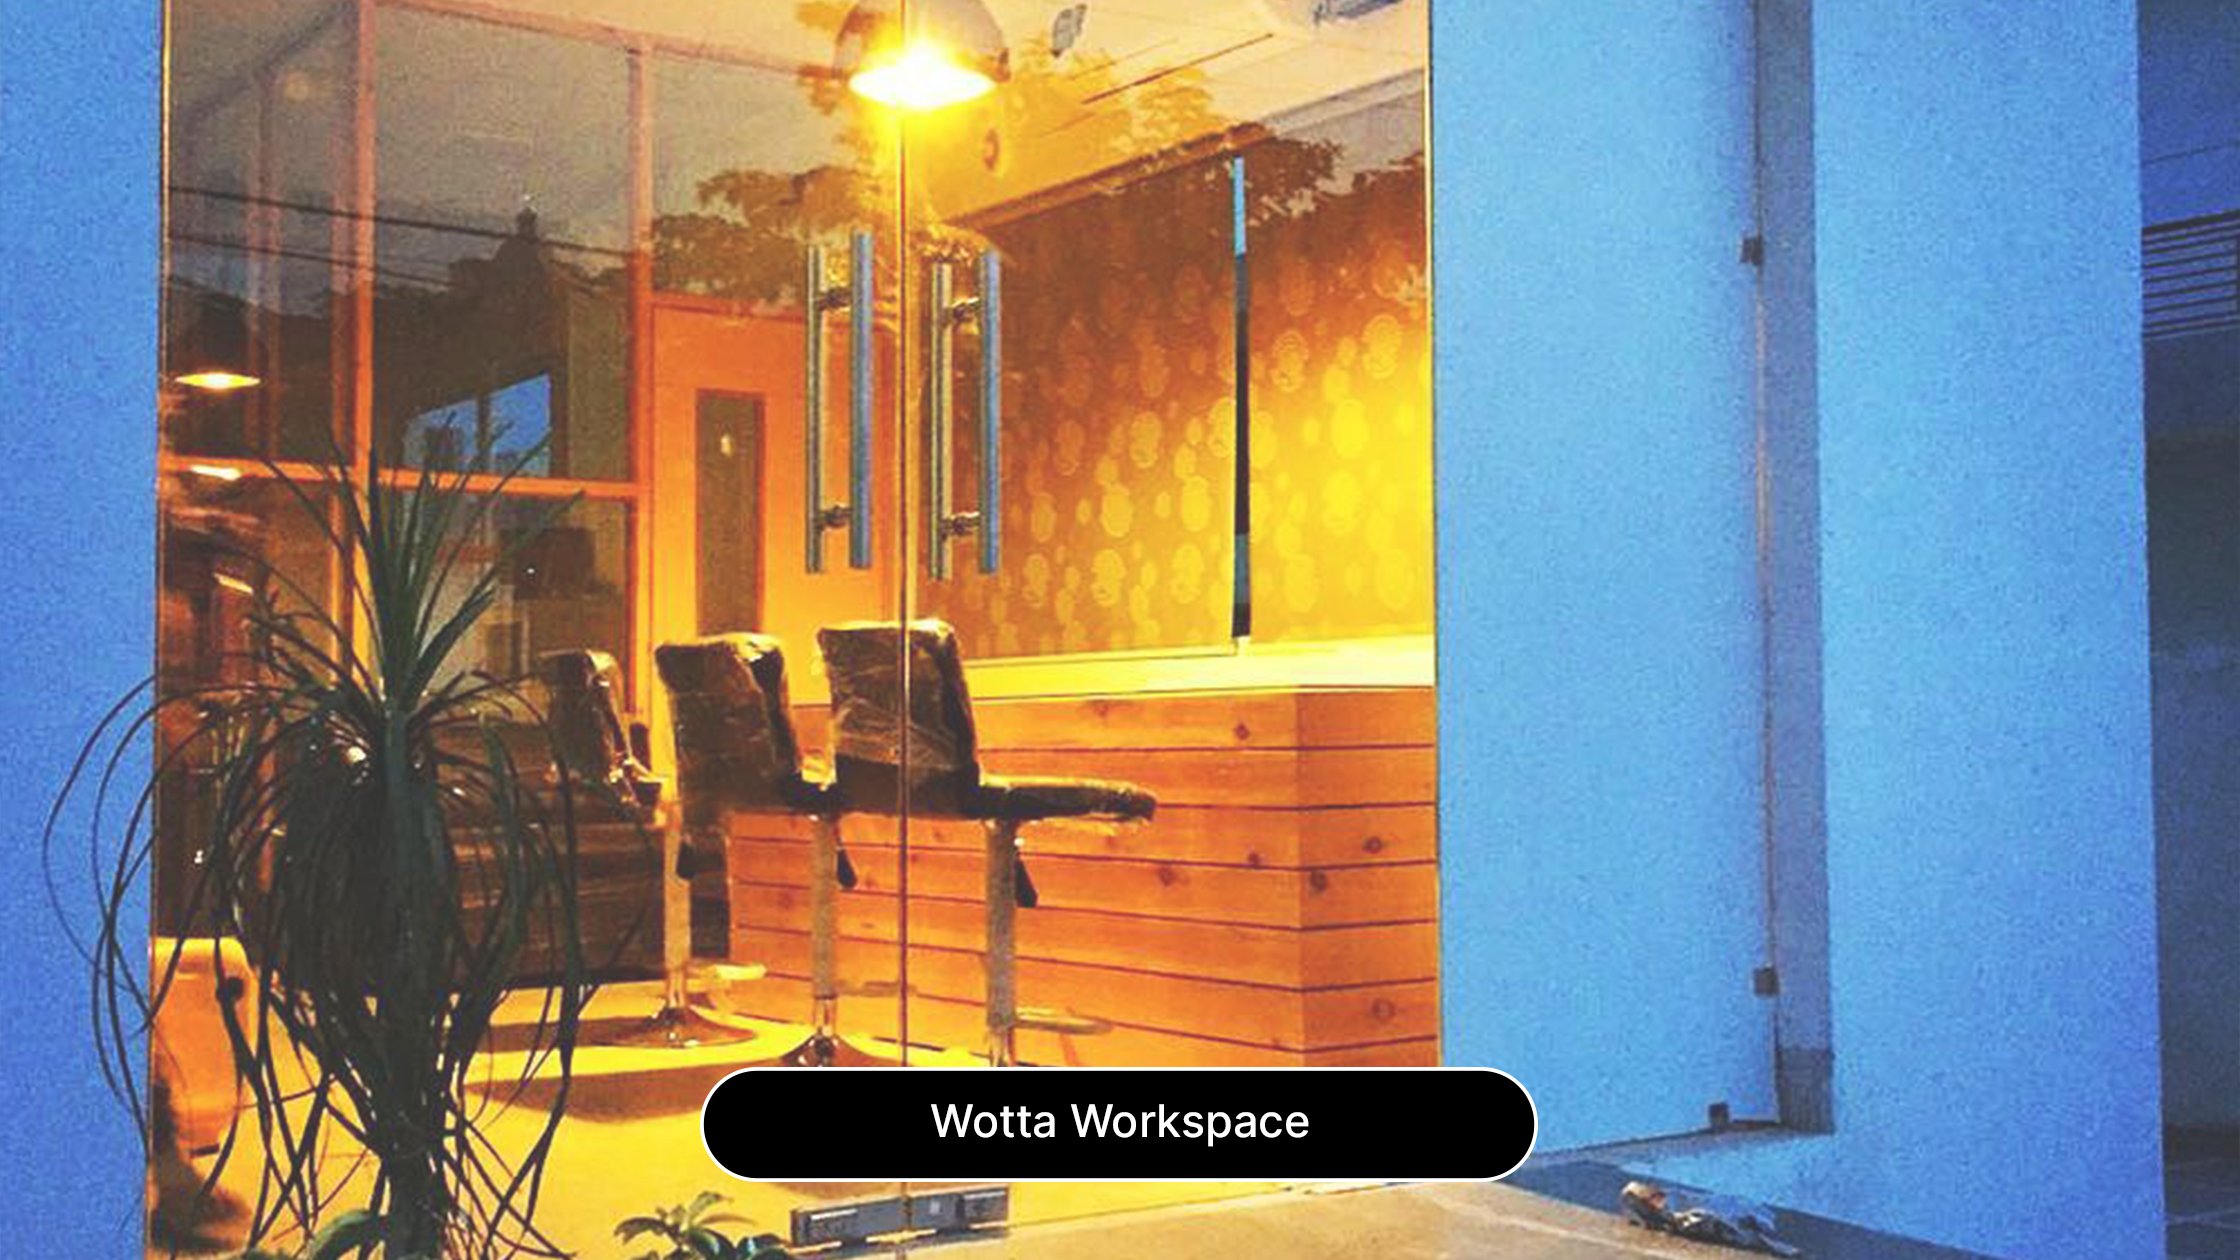 Wotta Workspace